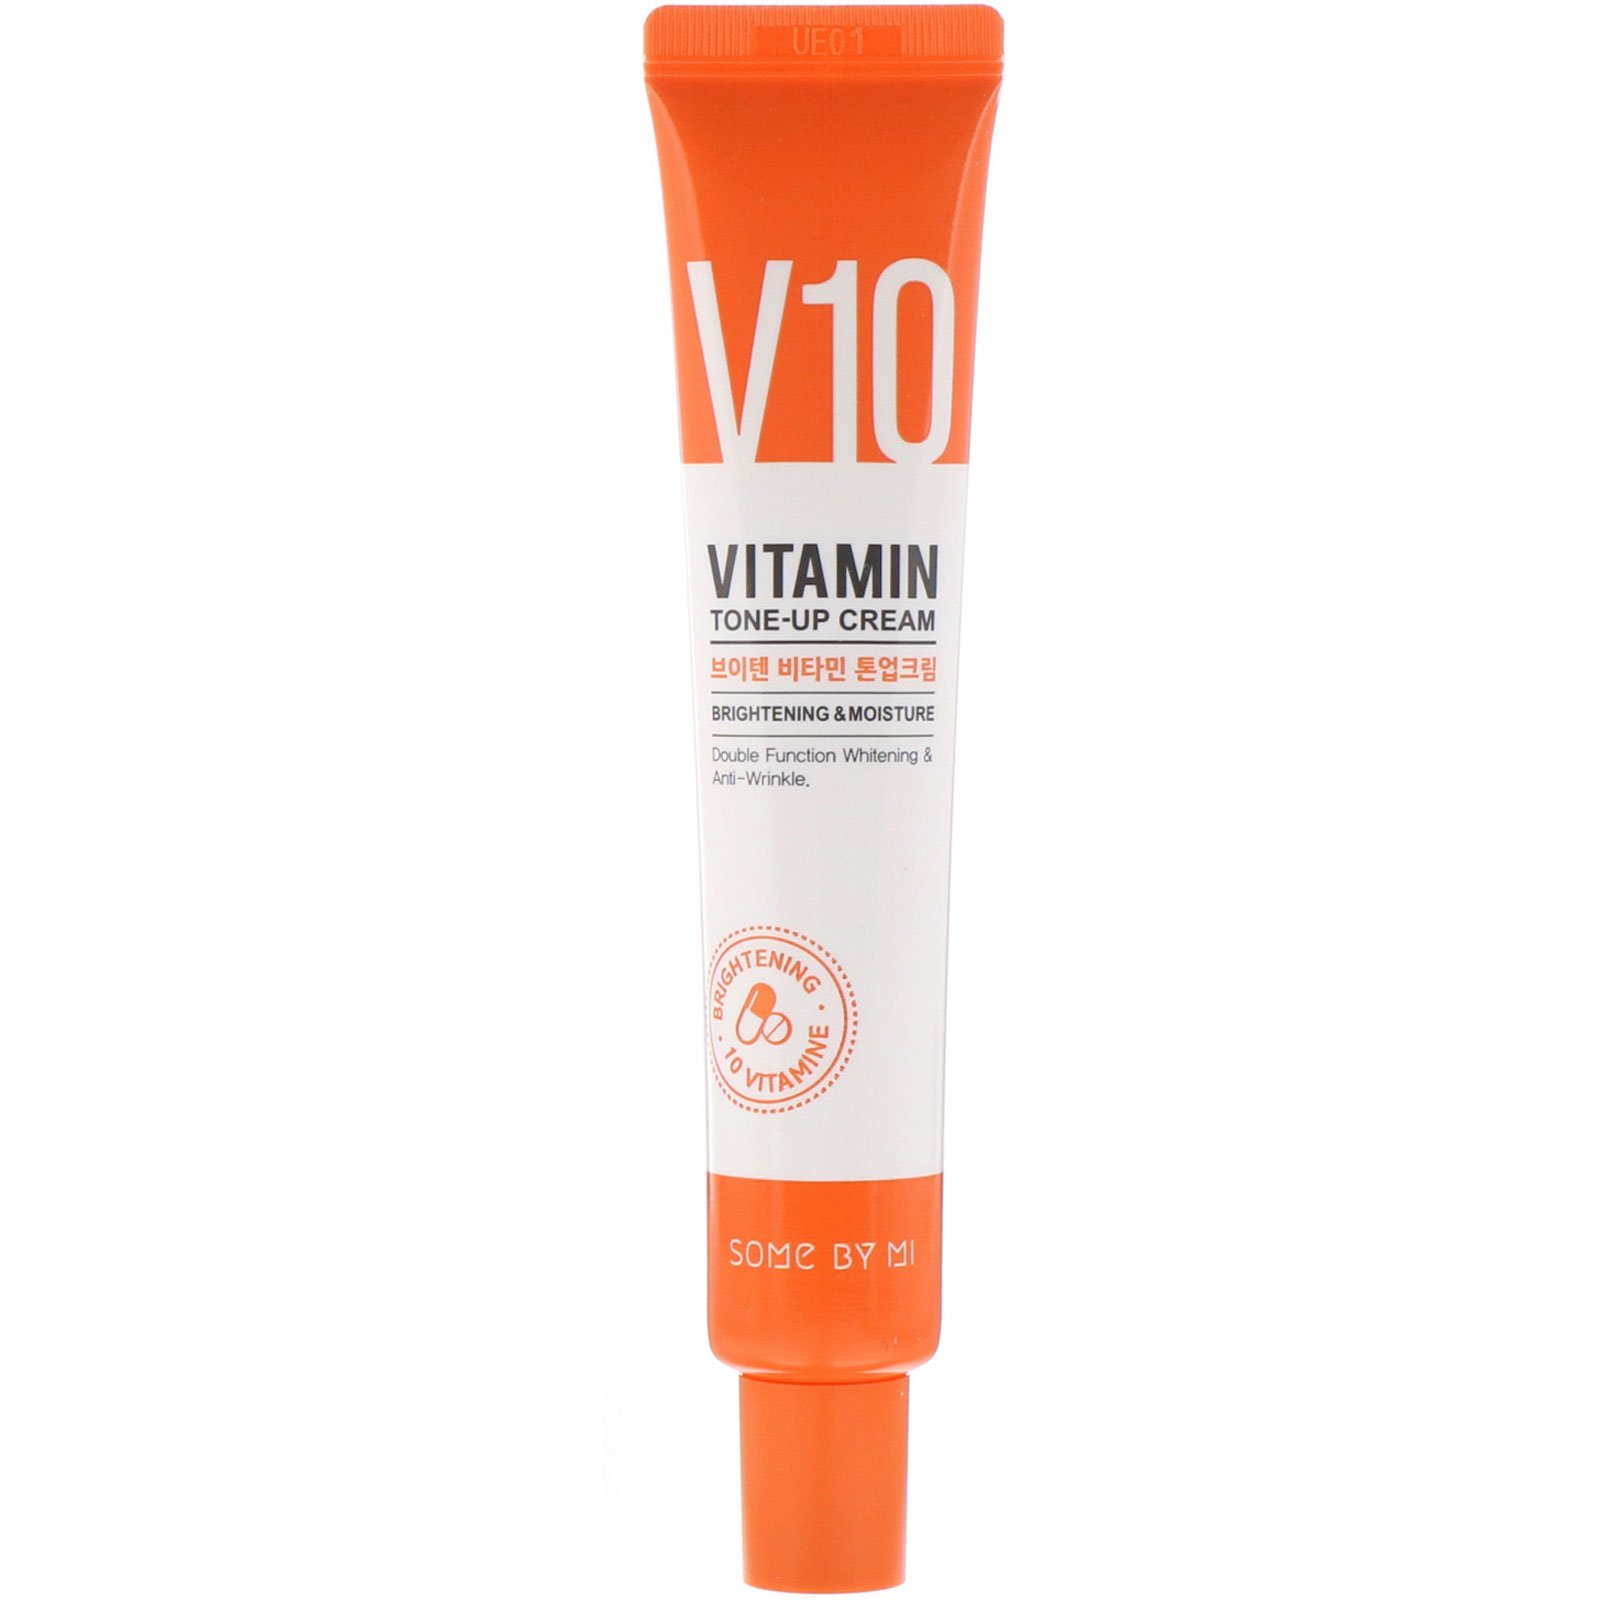 SOME BY MI V10 Vitamin Tone Up Cream 50ml - SkinLovers.sk